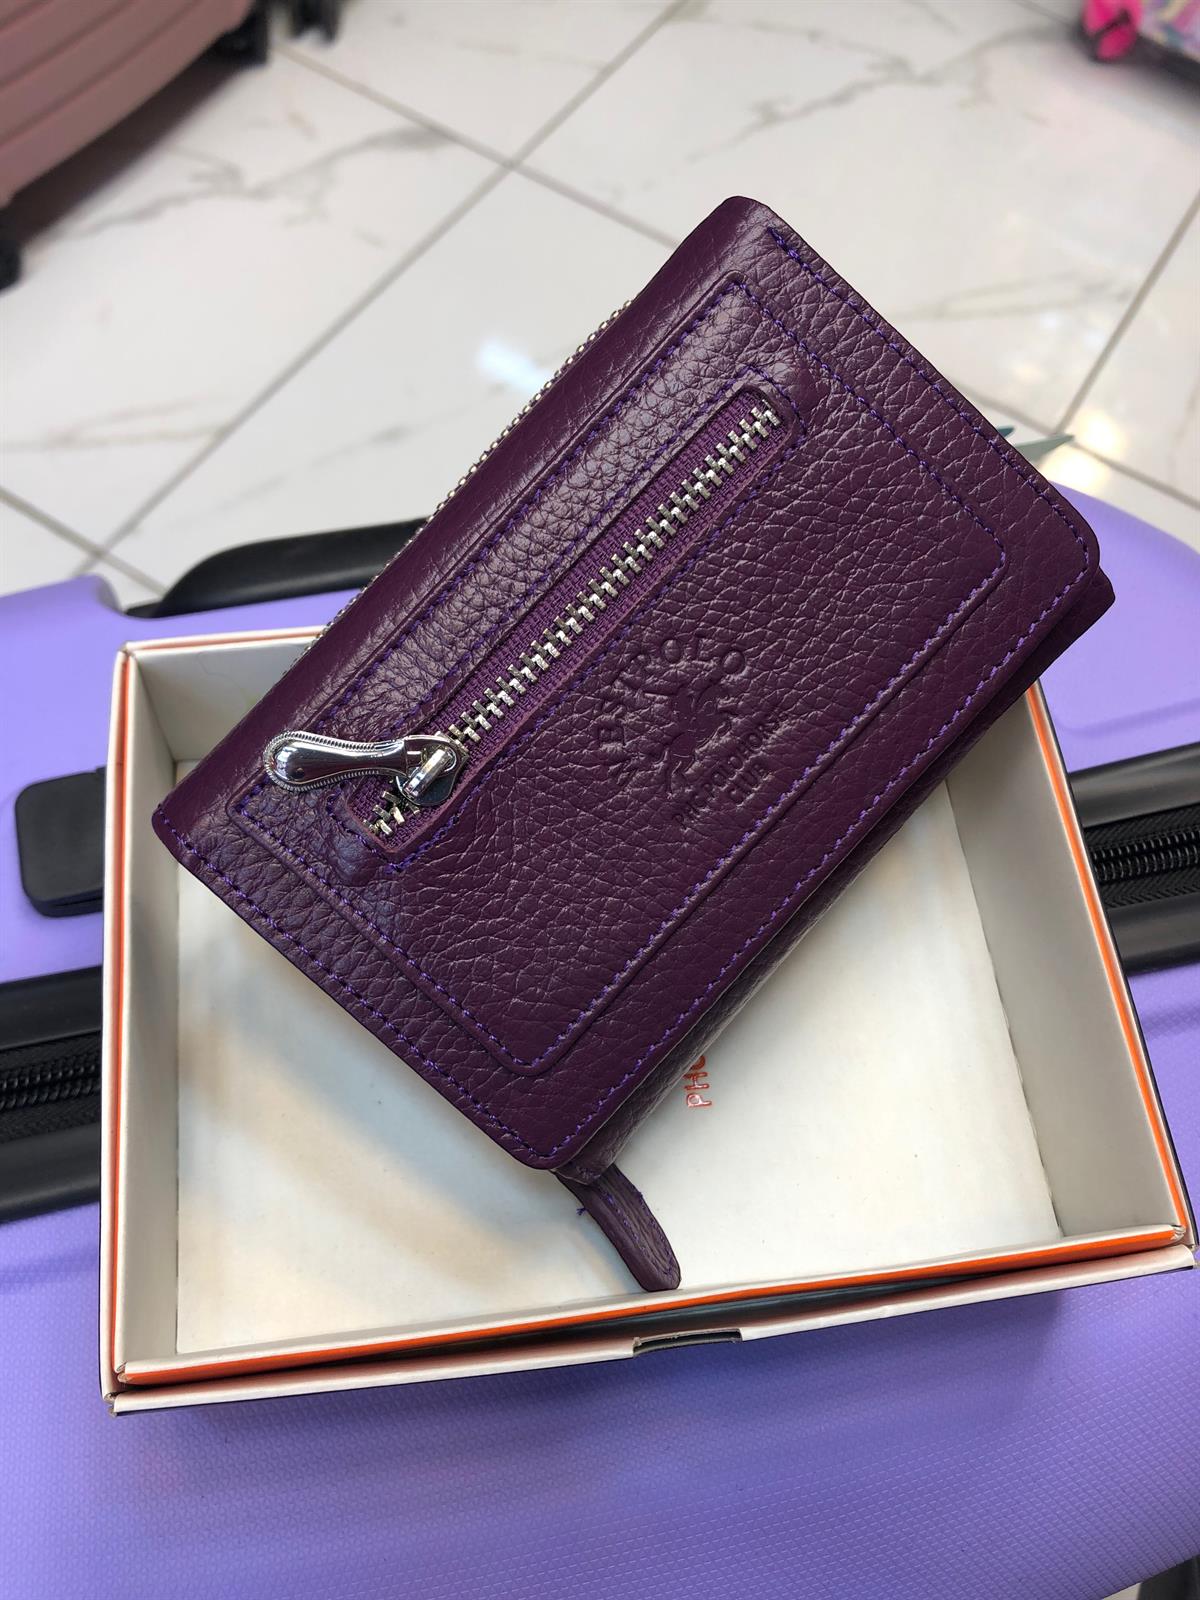 Mor kadın cüzdan mürdüm para çantası ebat 15cm10 gerçek deri kadın cüzdanı  |elizabell.com.tr